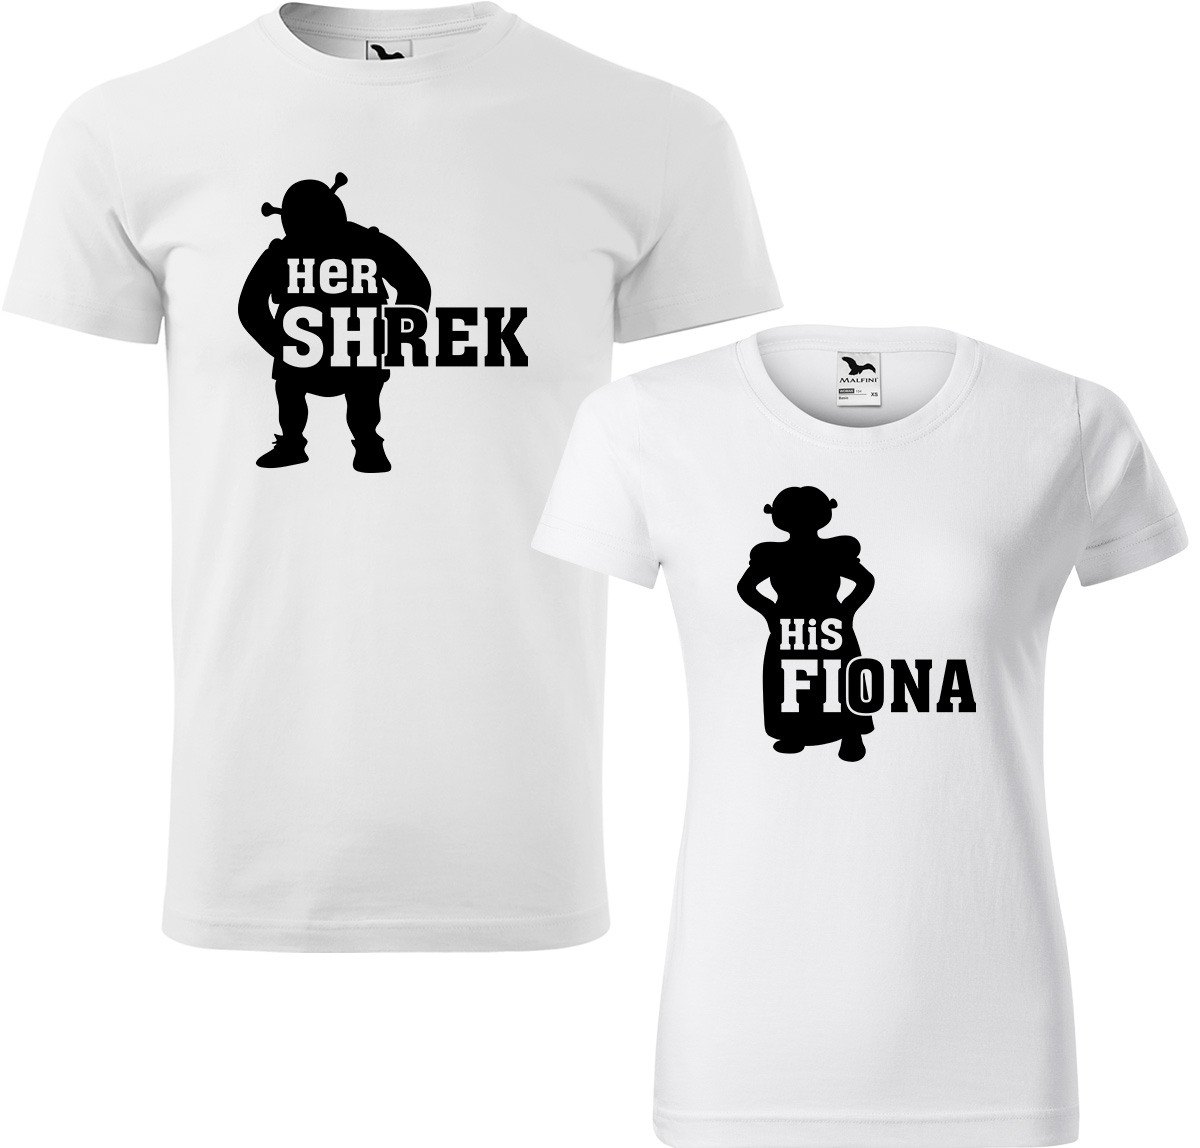 Trička pro páry - Shrek a Fiona Barva: Bílá (00), Velikost dámské tričko: S, Velikost pánské tričko: XL